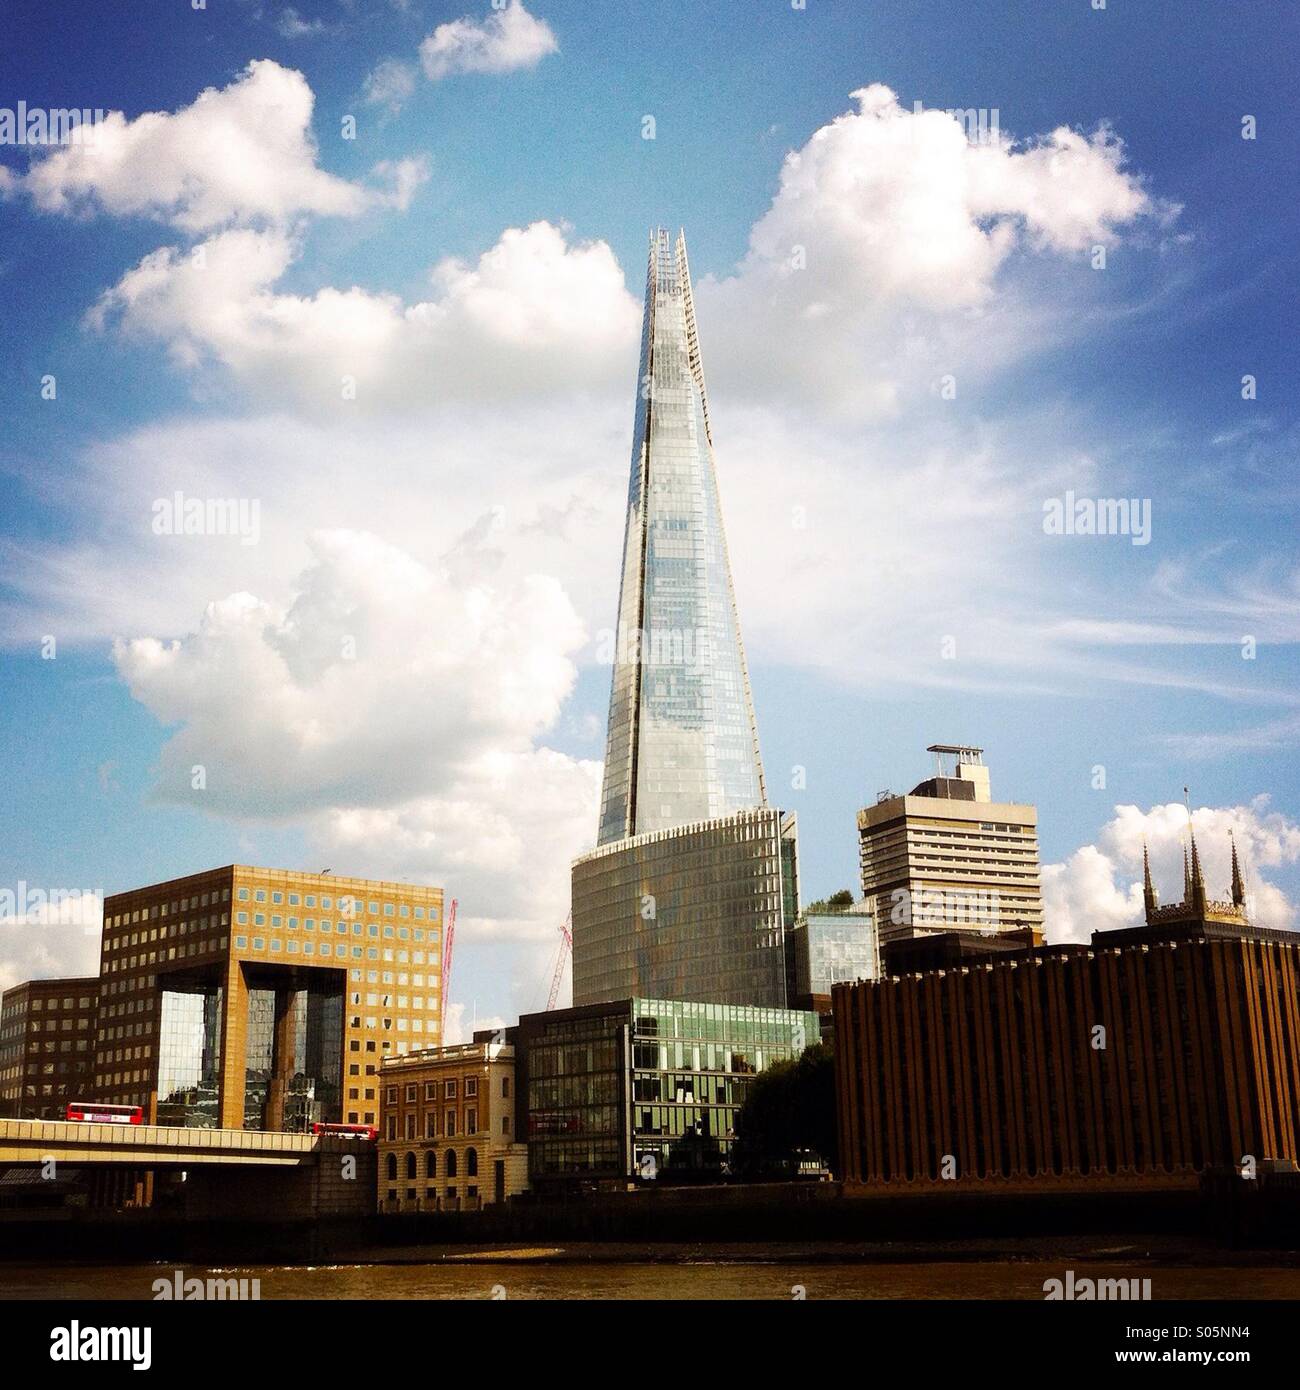 Le shard et autres bâtiments. London England UK. Banque D'Images